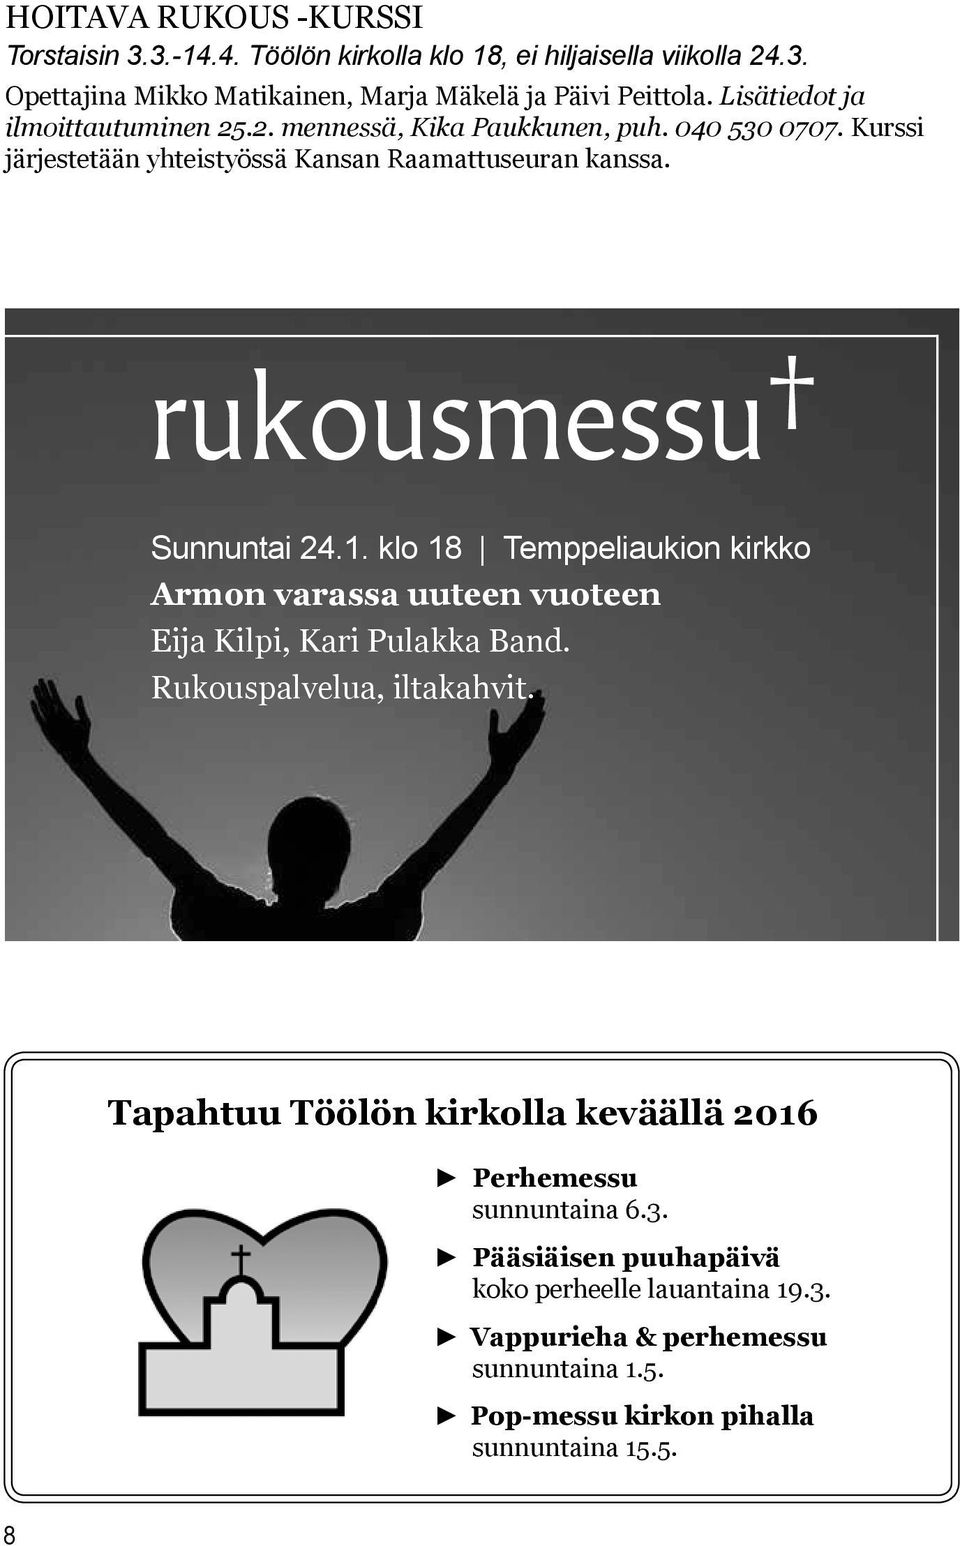 rukousmessu Sunnuntai 24.1. klo 18 Temppeliaukion kirkko Armon varassa uuteen vuoteen Eija Kilpi, Kari Pulakka Band. Rukouspalvelua, iltakahvit.